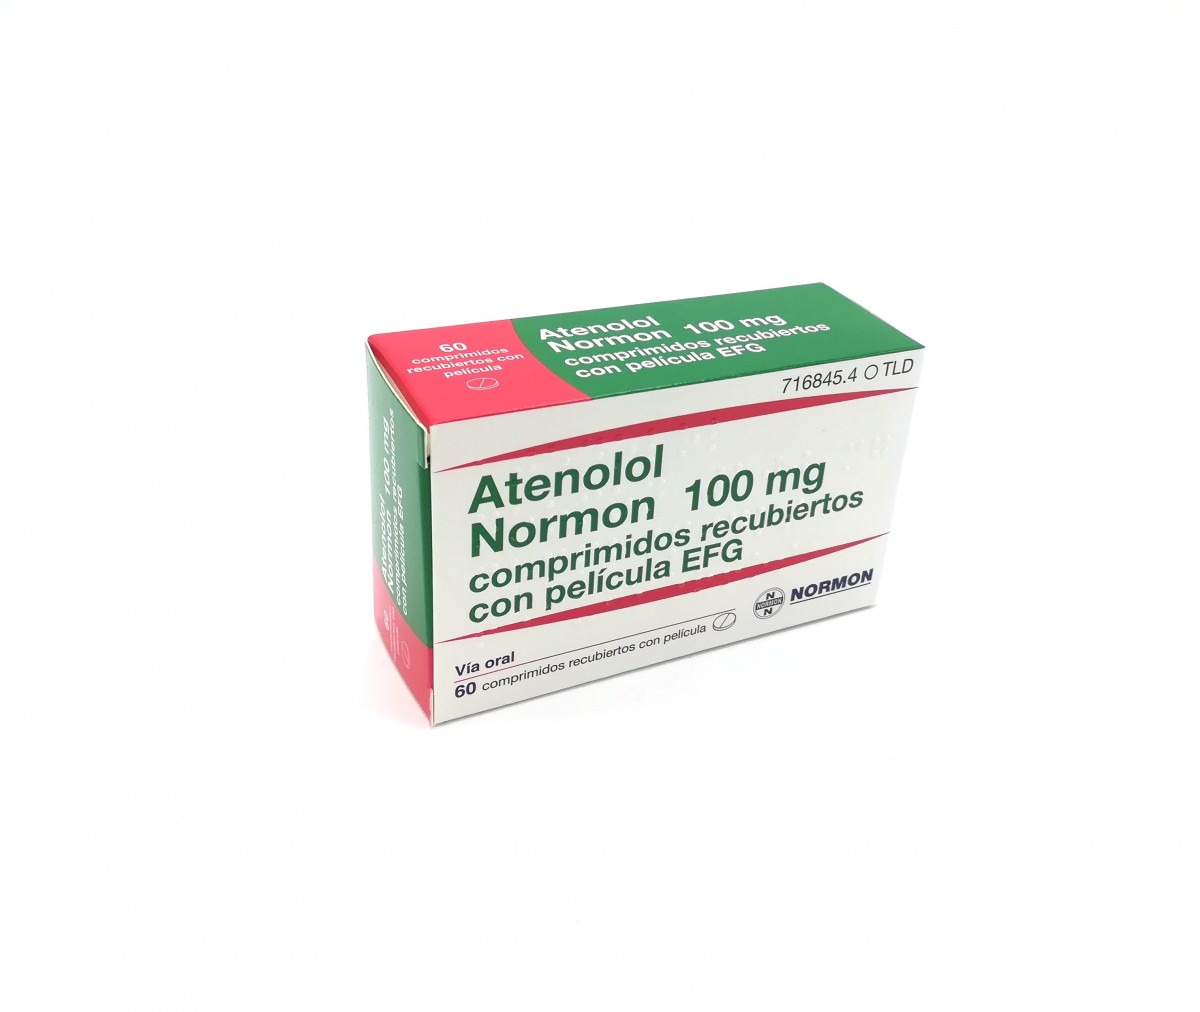 ATENOLOL NORMON 100 mg COMPRIMIDOS RECUBIERTOS EFG, 30 comprimidos fotografía del envase.